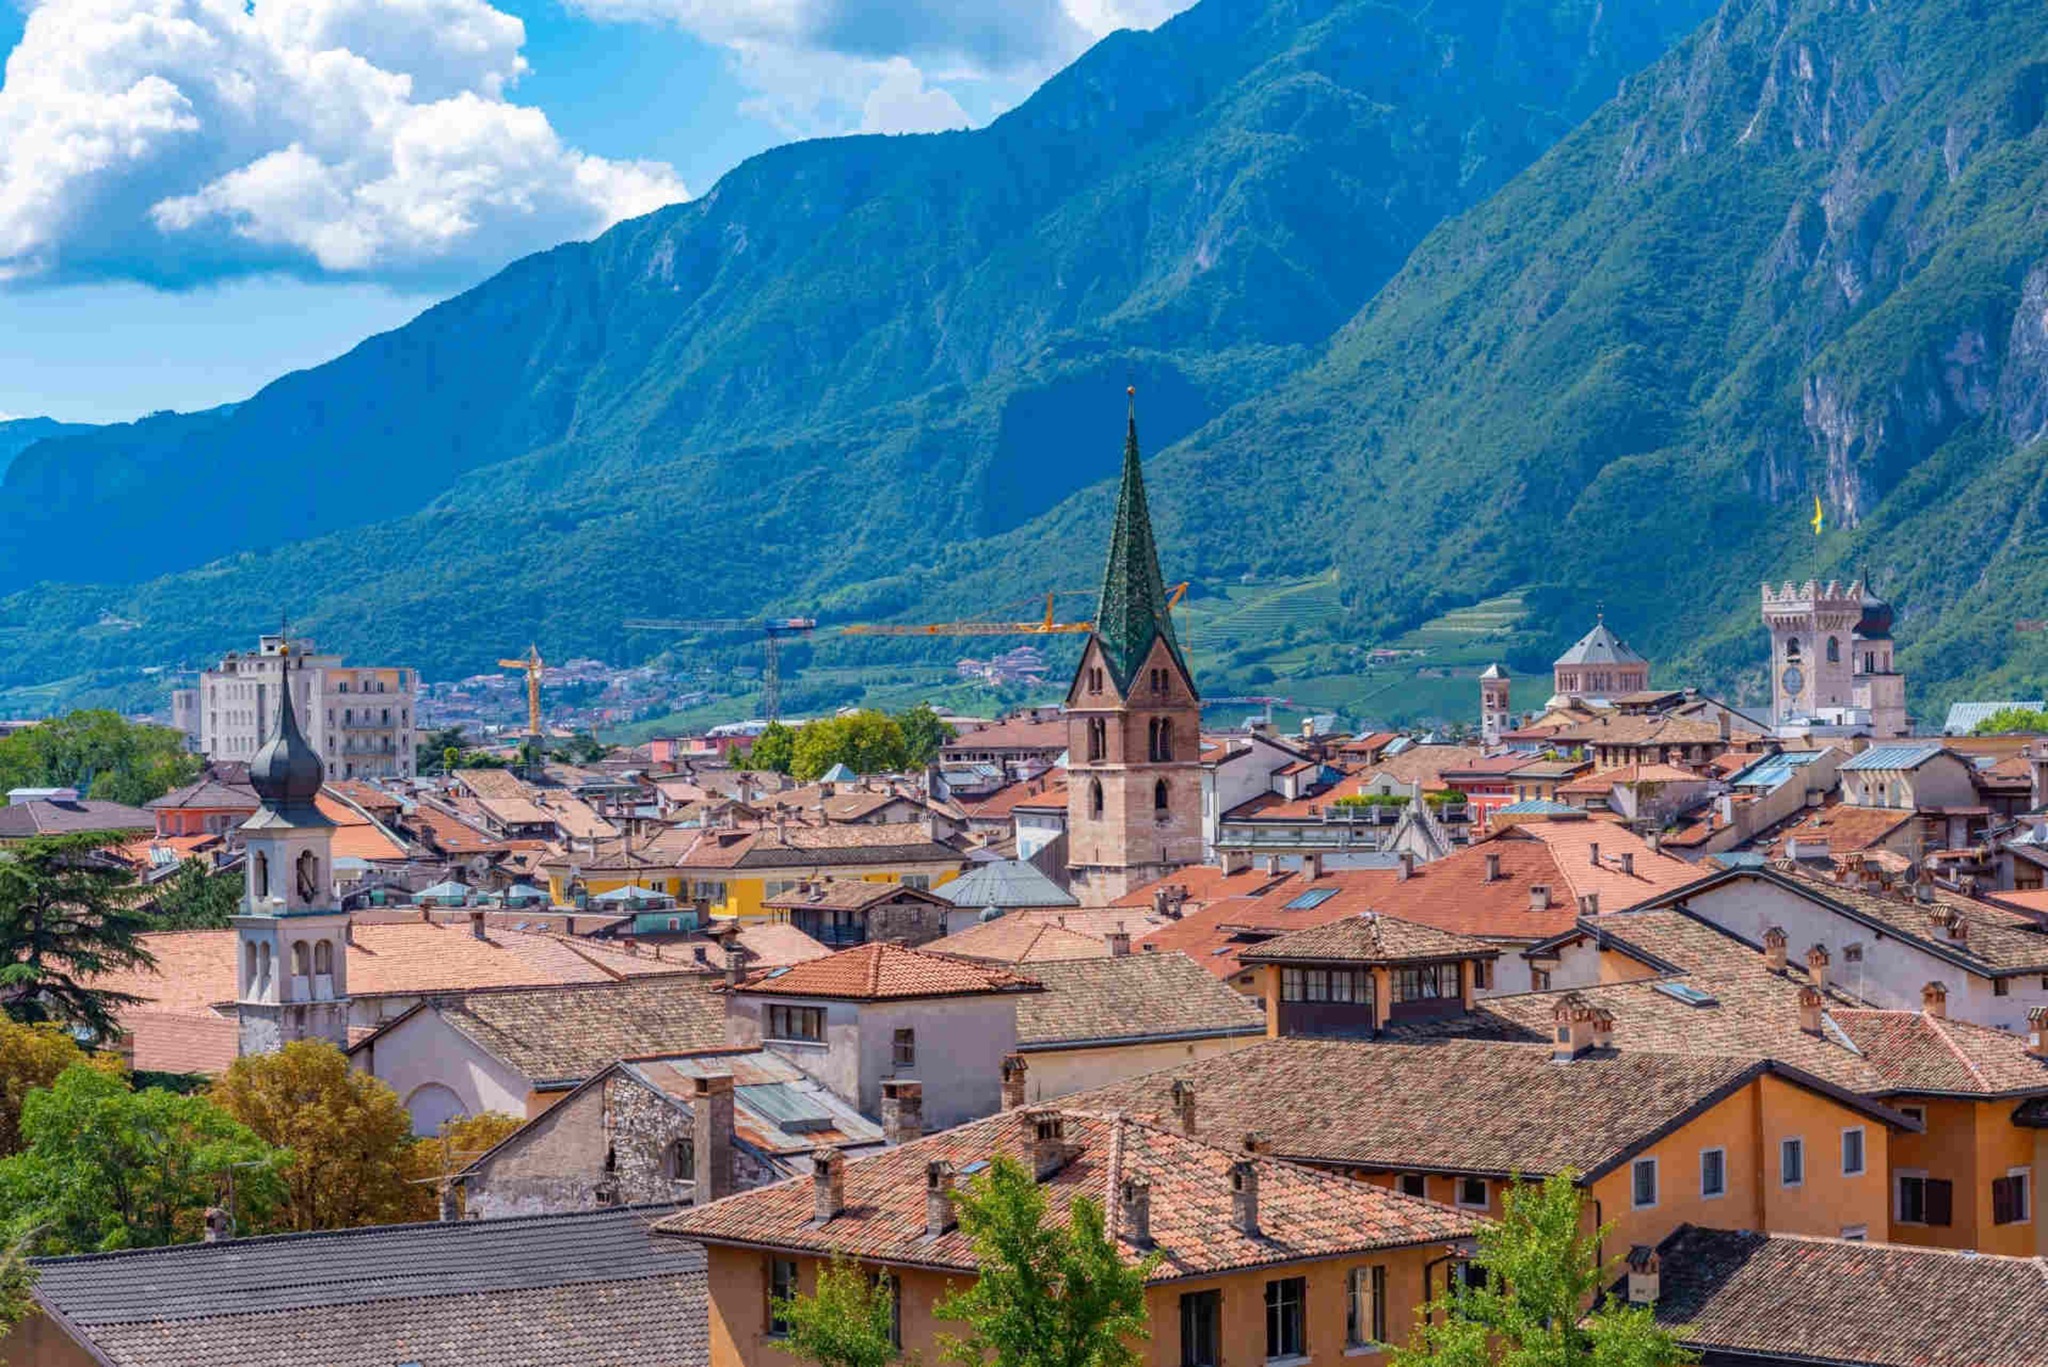 Cosa vedere a Trento: foto del centro storico